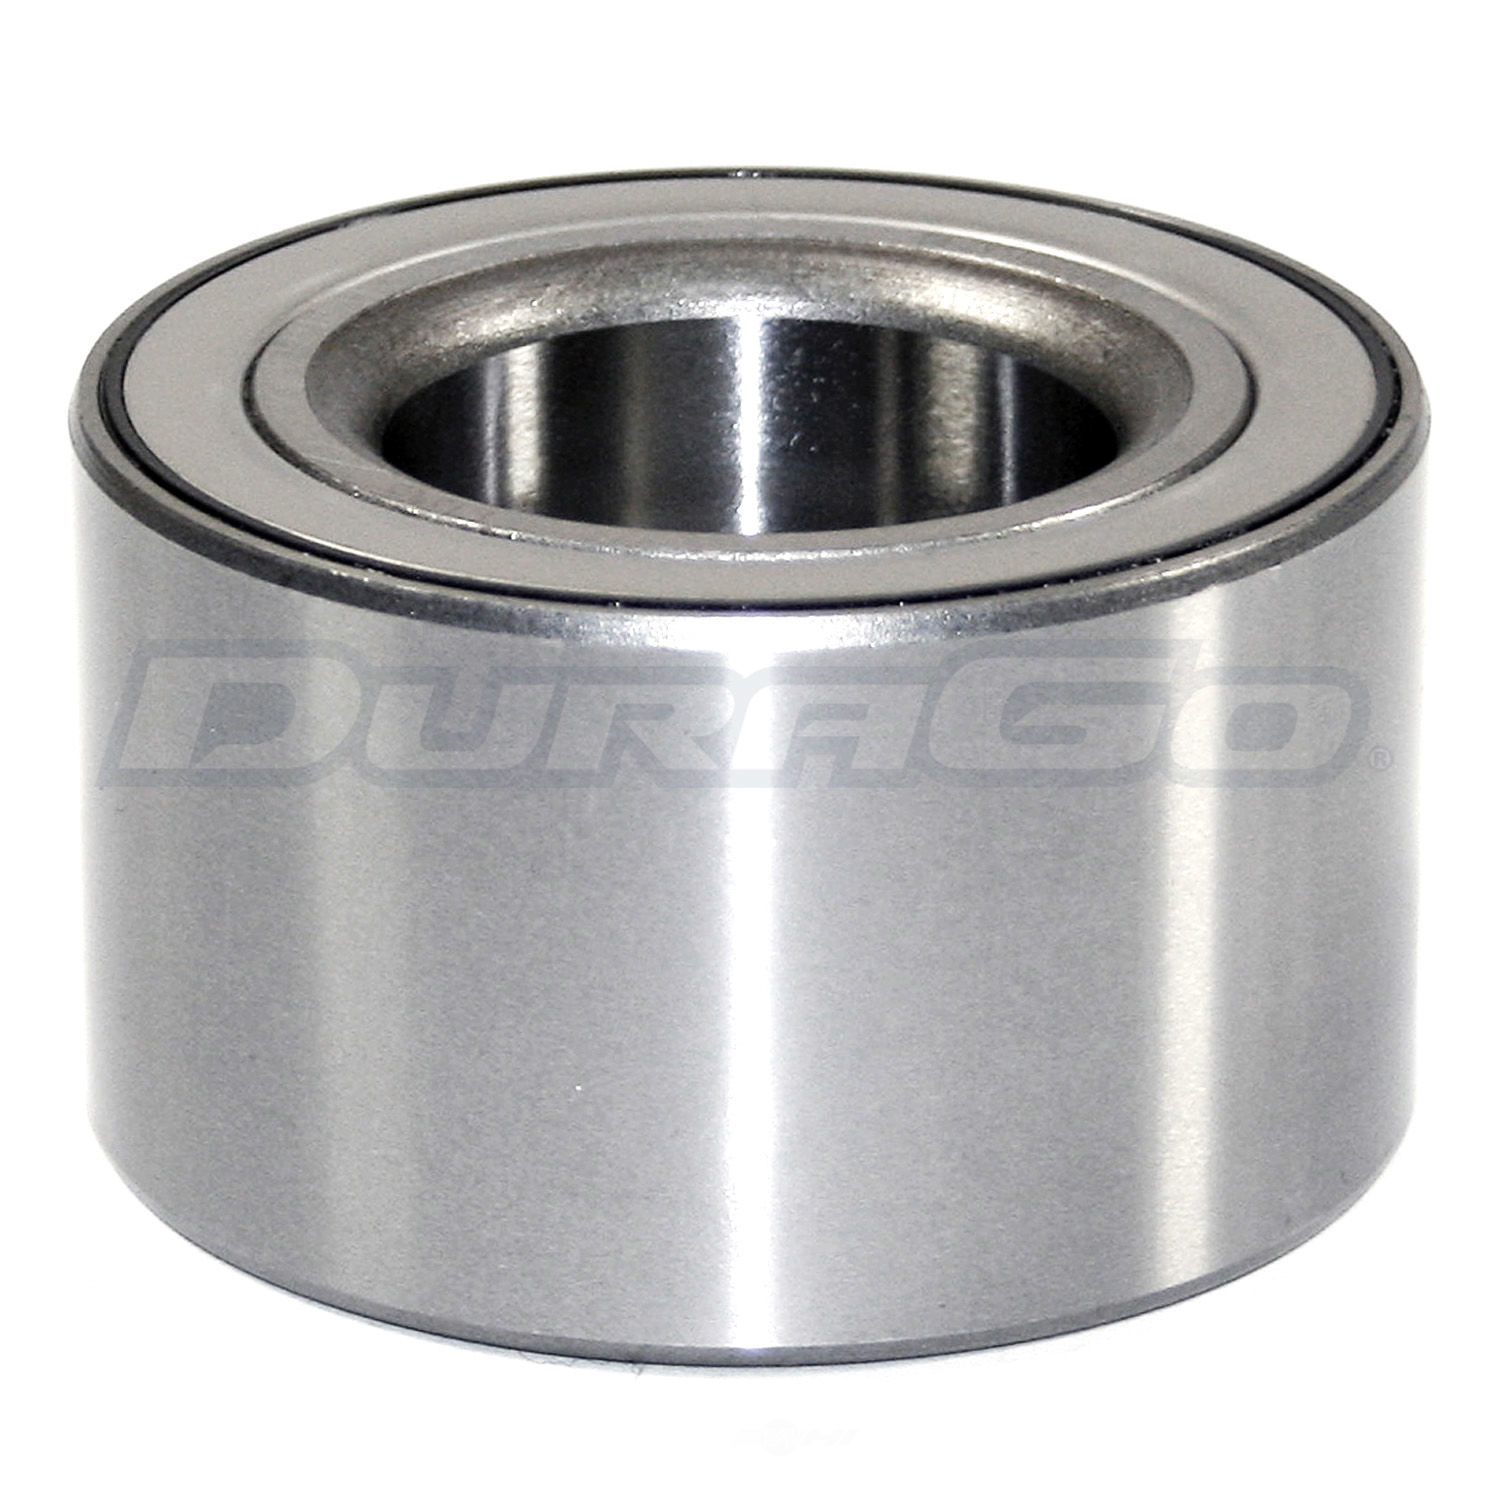 DURAGO - Wheel Bearing - D48 295-10070